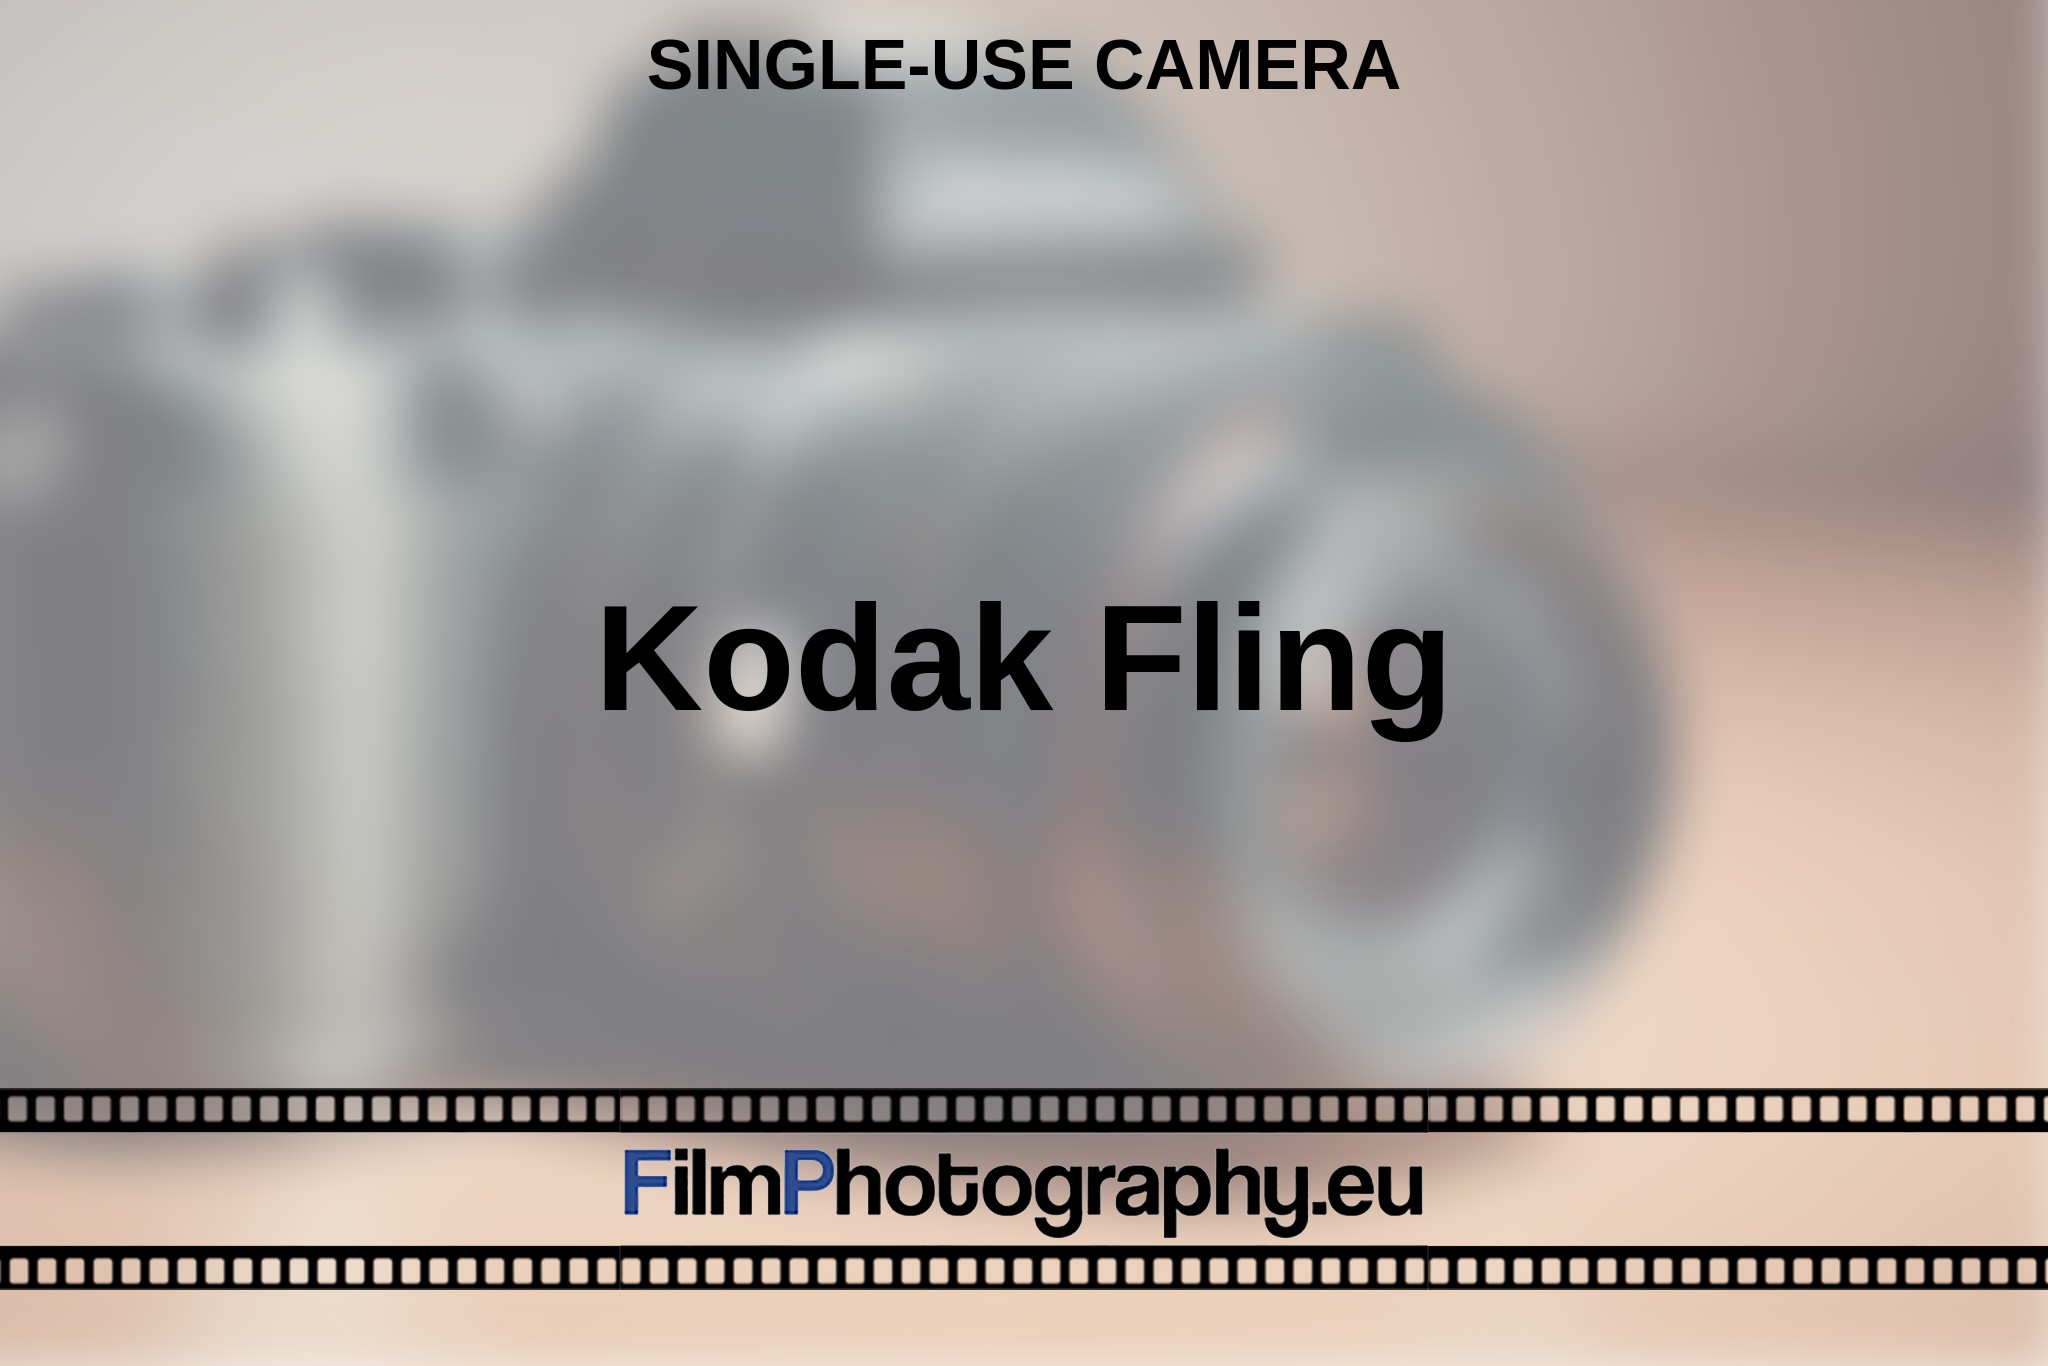 kodak-fling-single-use-camera-en-bnv.jpg